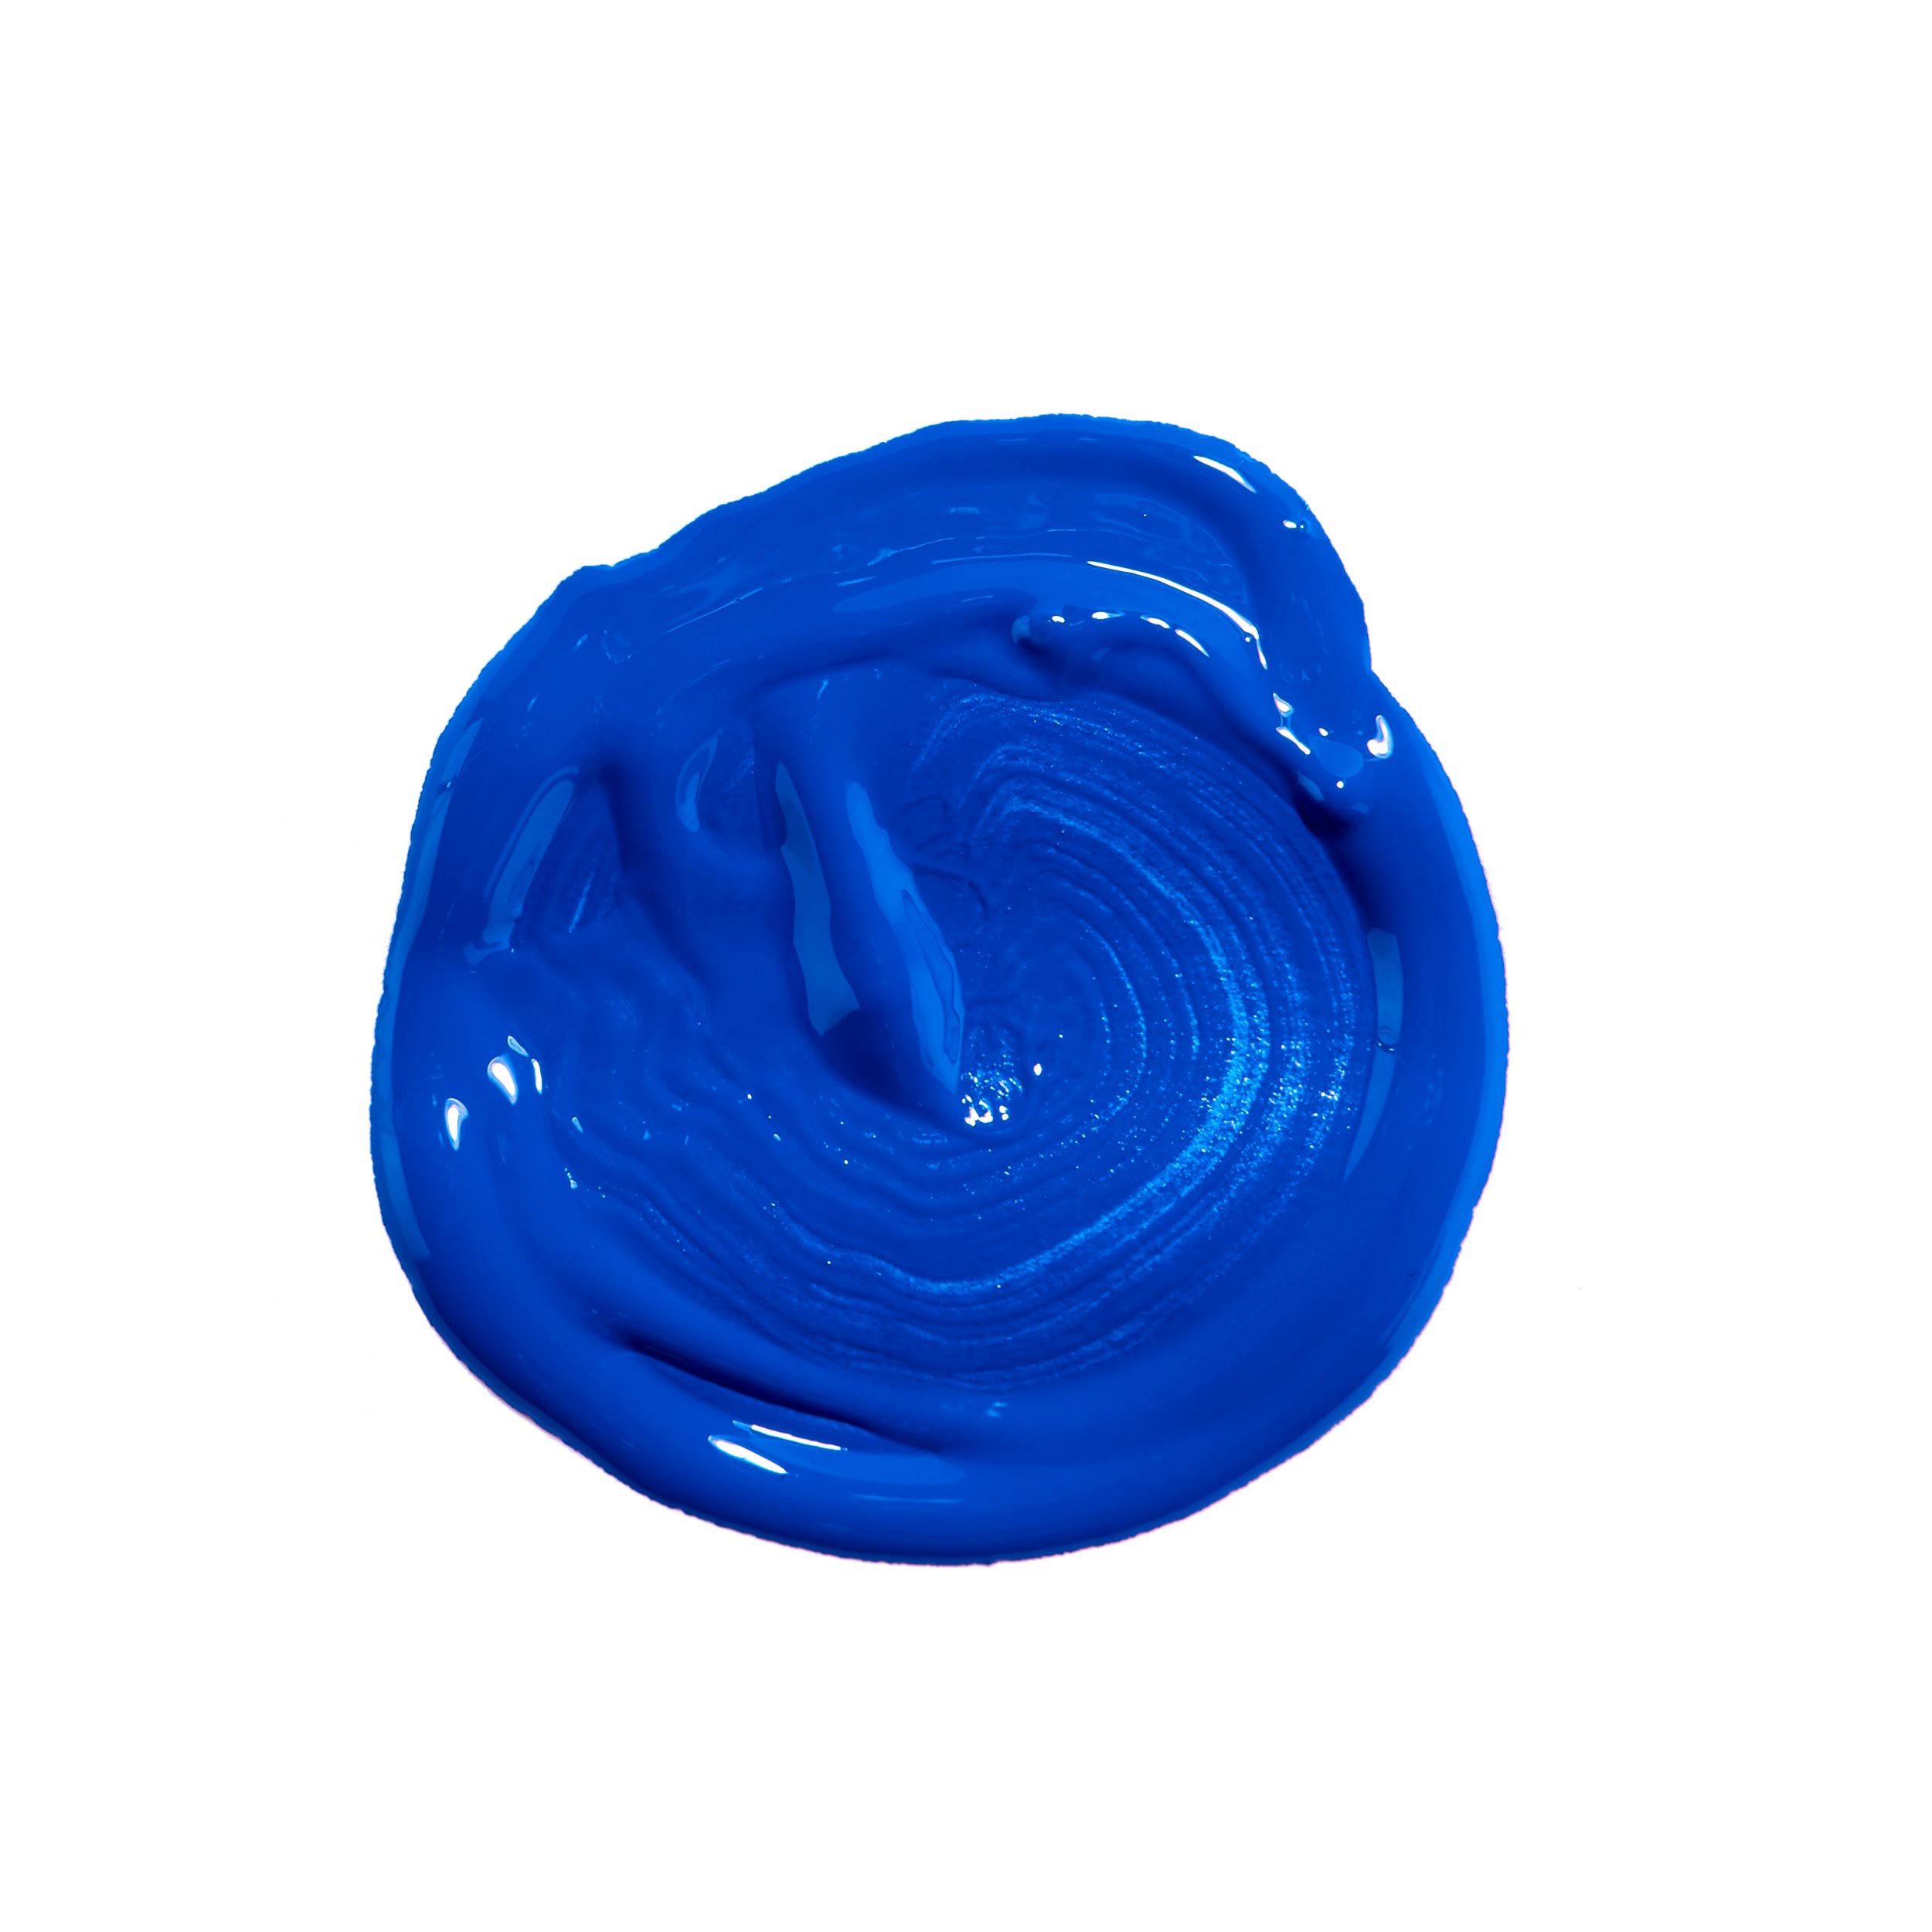 Acrylic Enamel Paint 100gr French Blue (45) - Αντωνιάδης – Κέντρο  εκπαιδευτικού Υλικού και Ειδών Χειροτεχνίας